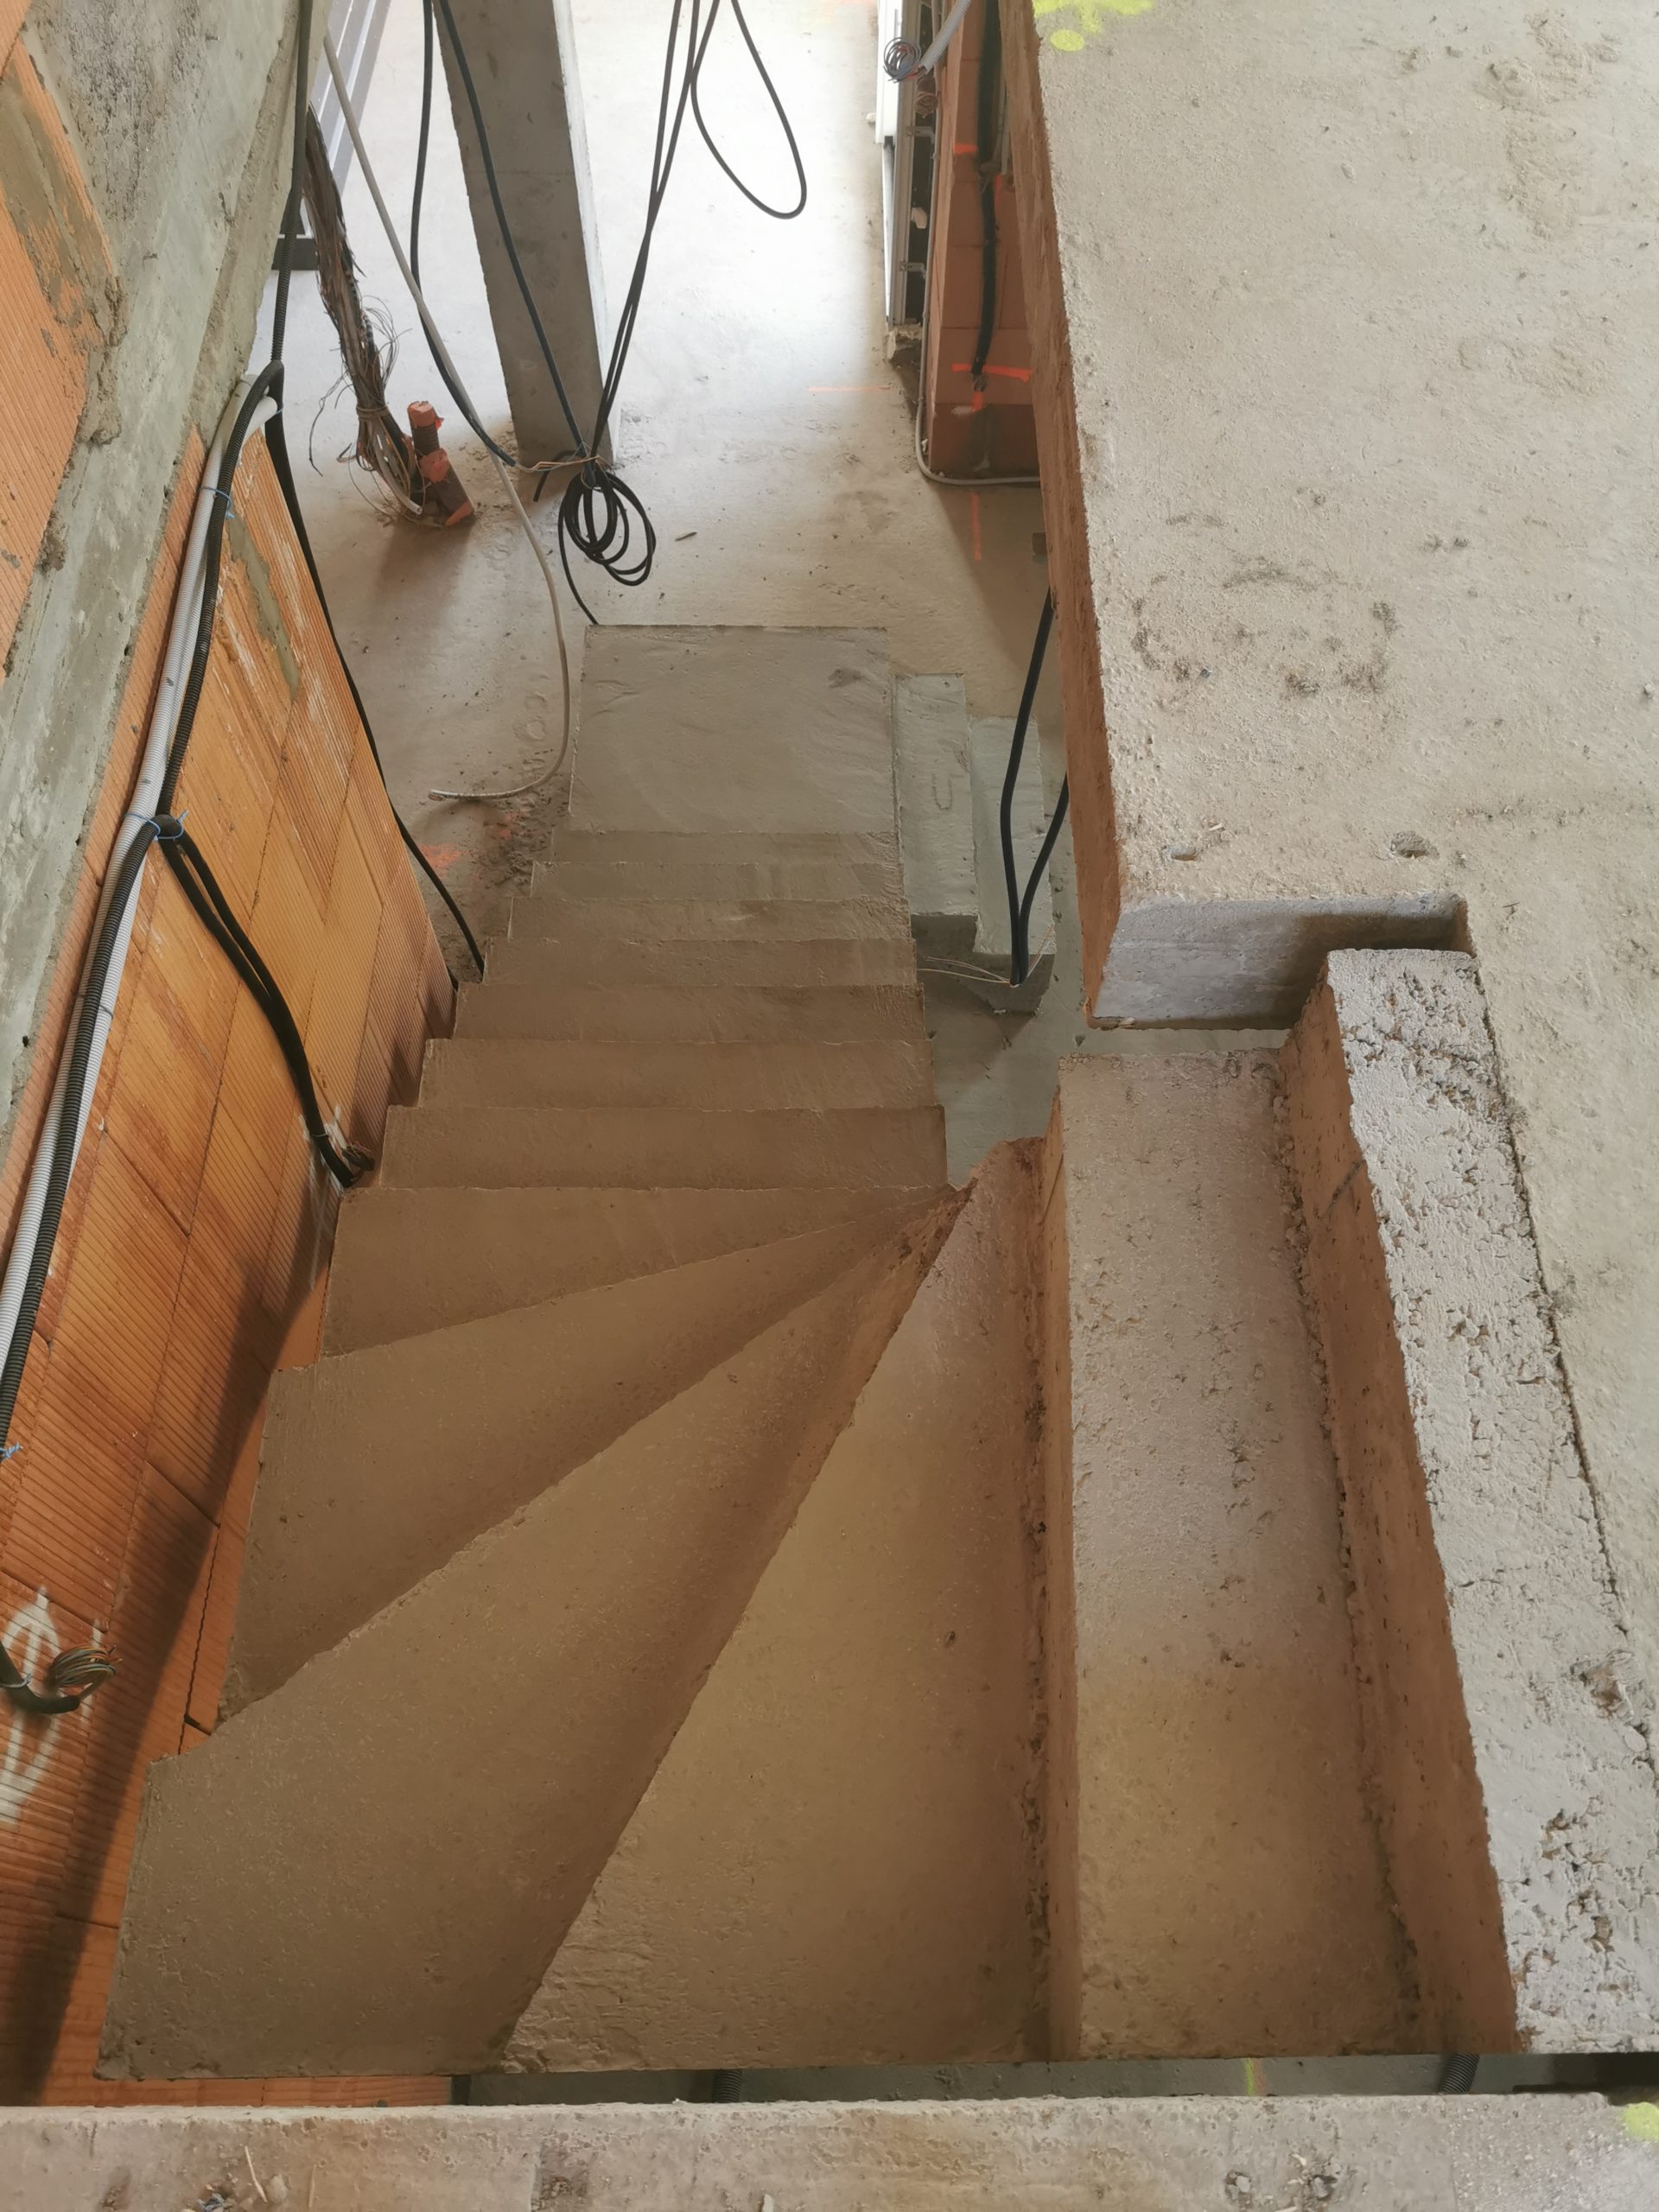 Vue de dessous d'un escalier décoffré dans une maison en construction.